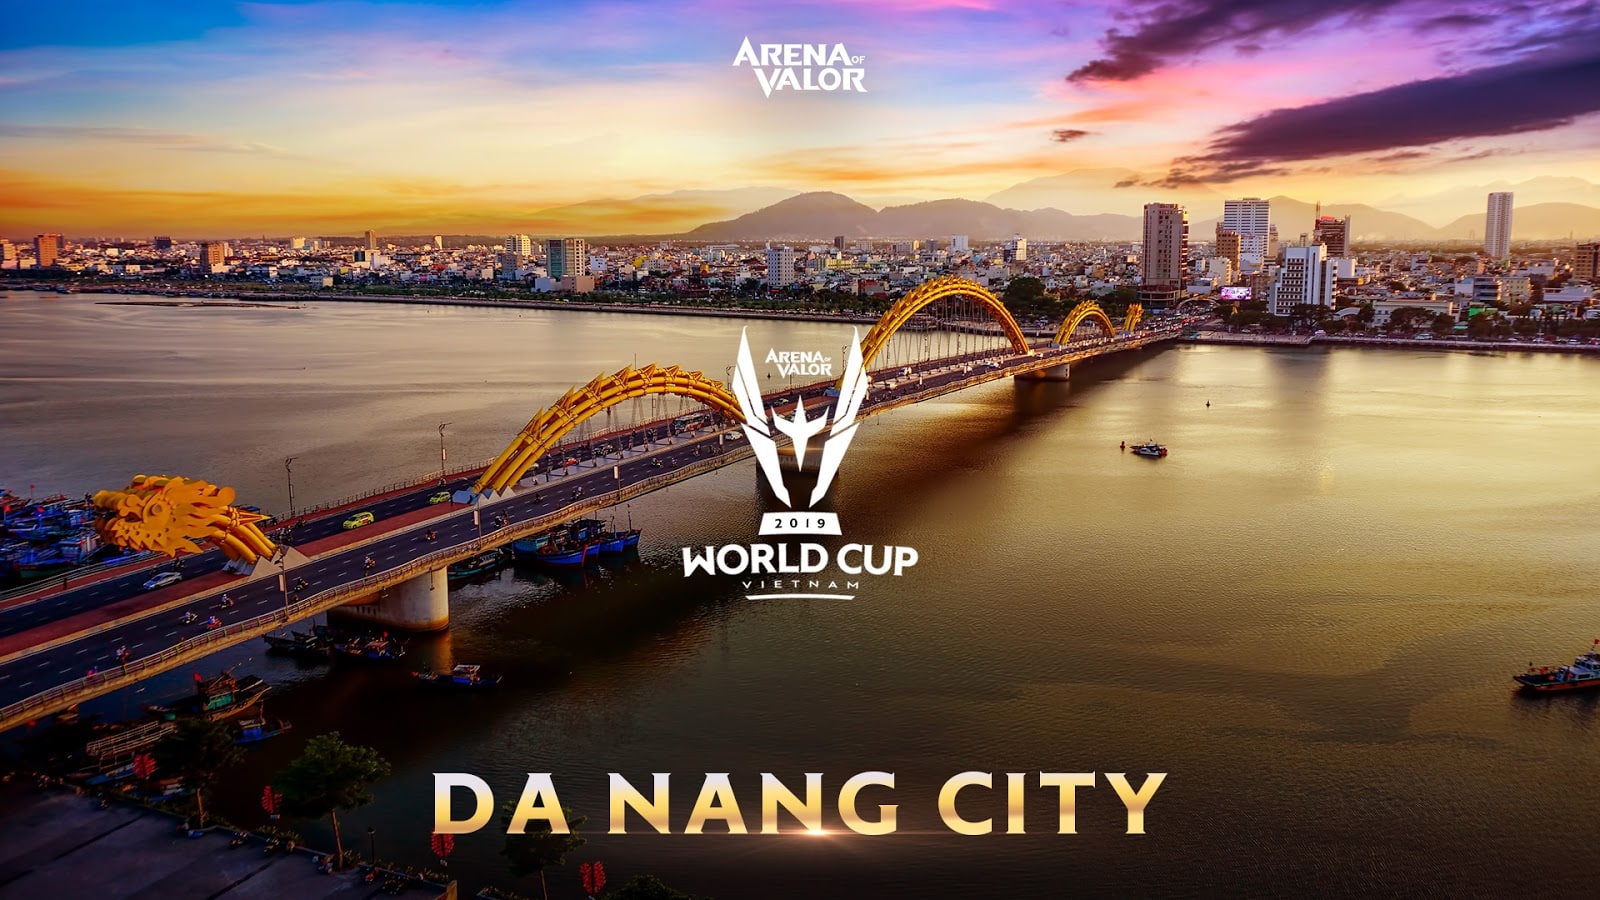 ประกาศรายชื่อทีมแข่งขัน Arena of Valor World Cup 2019 ชิงเงินรางวัลรวม 16 ล้านบาท